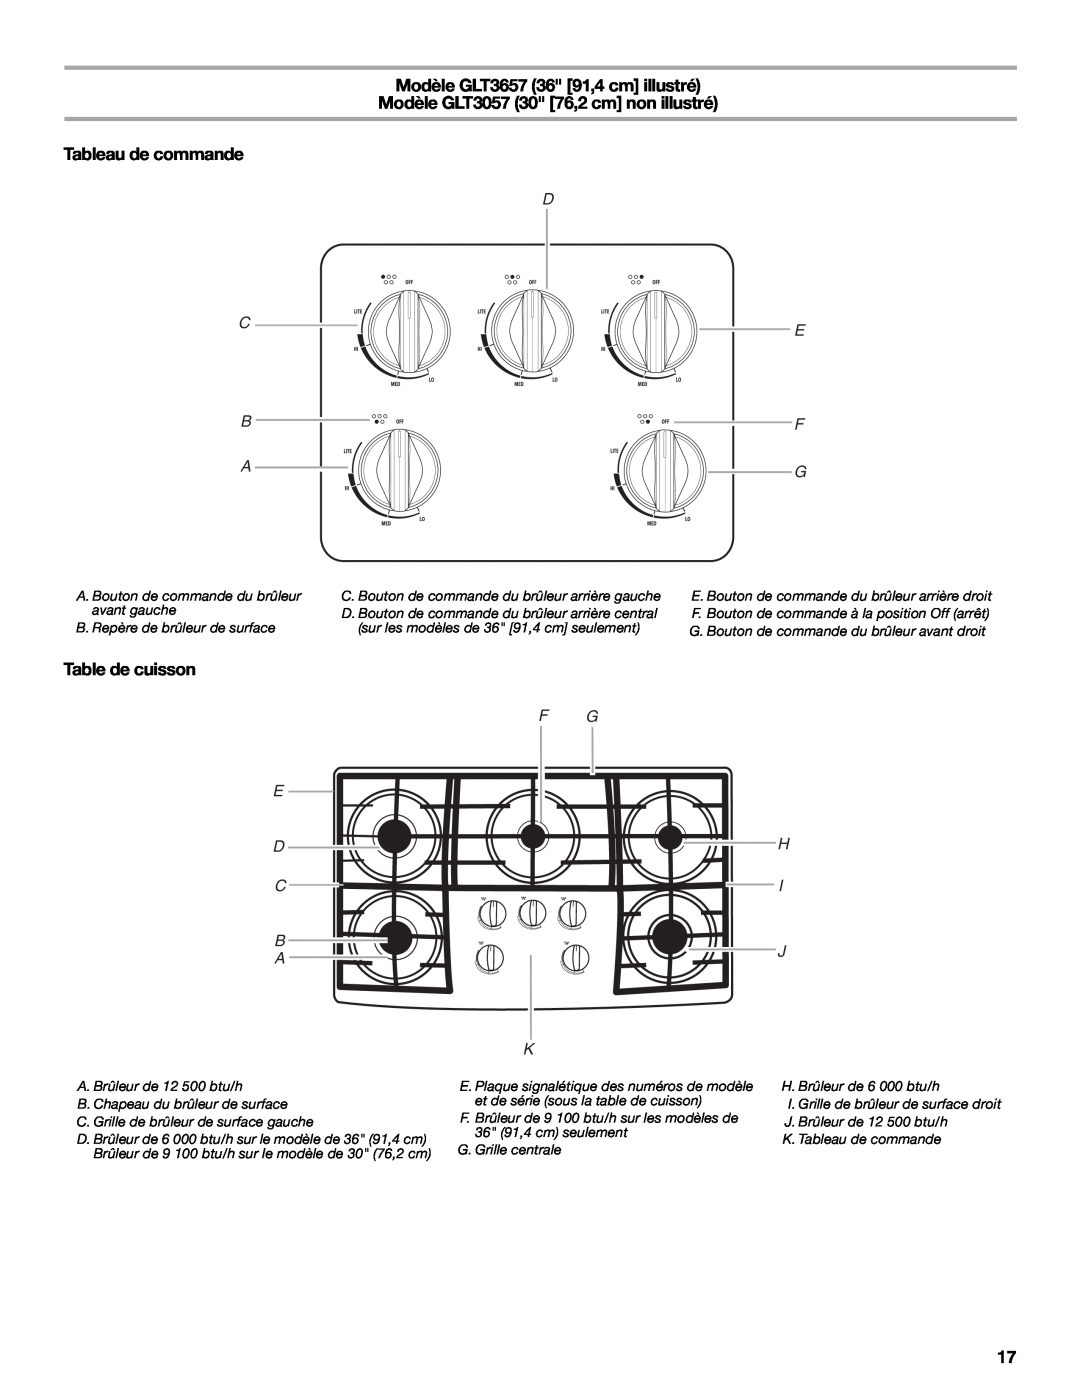 Whirlpool GLS3074 Modèle GLT3657 36 91,4 cm illustré, Modèle GLT3057 30 76,2 cm non illustré, Tableau de commande, C B A 